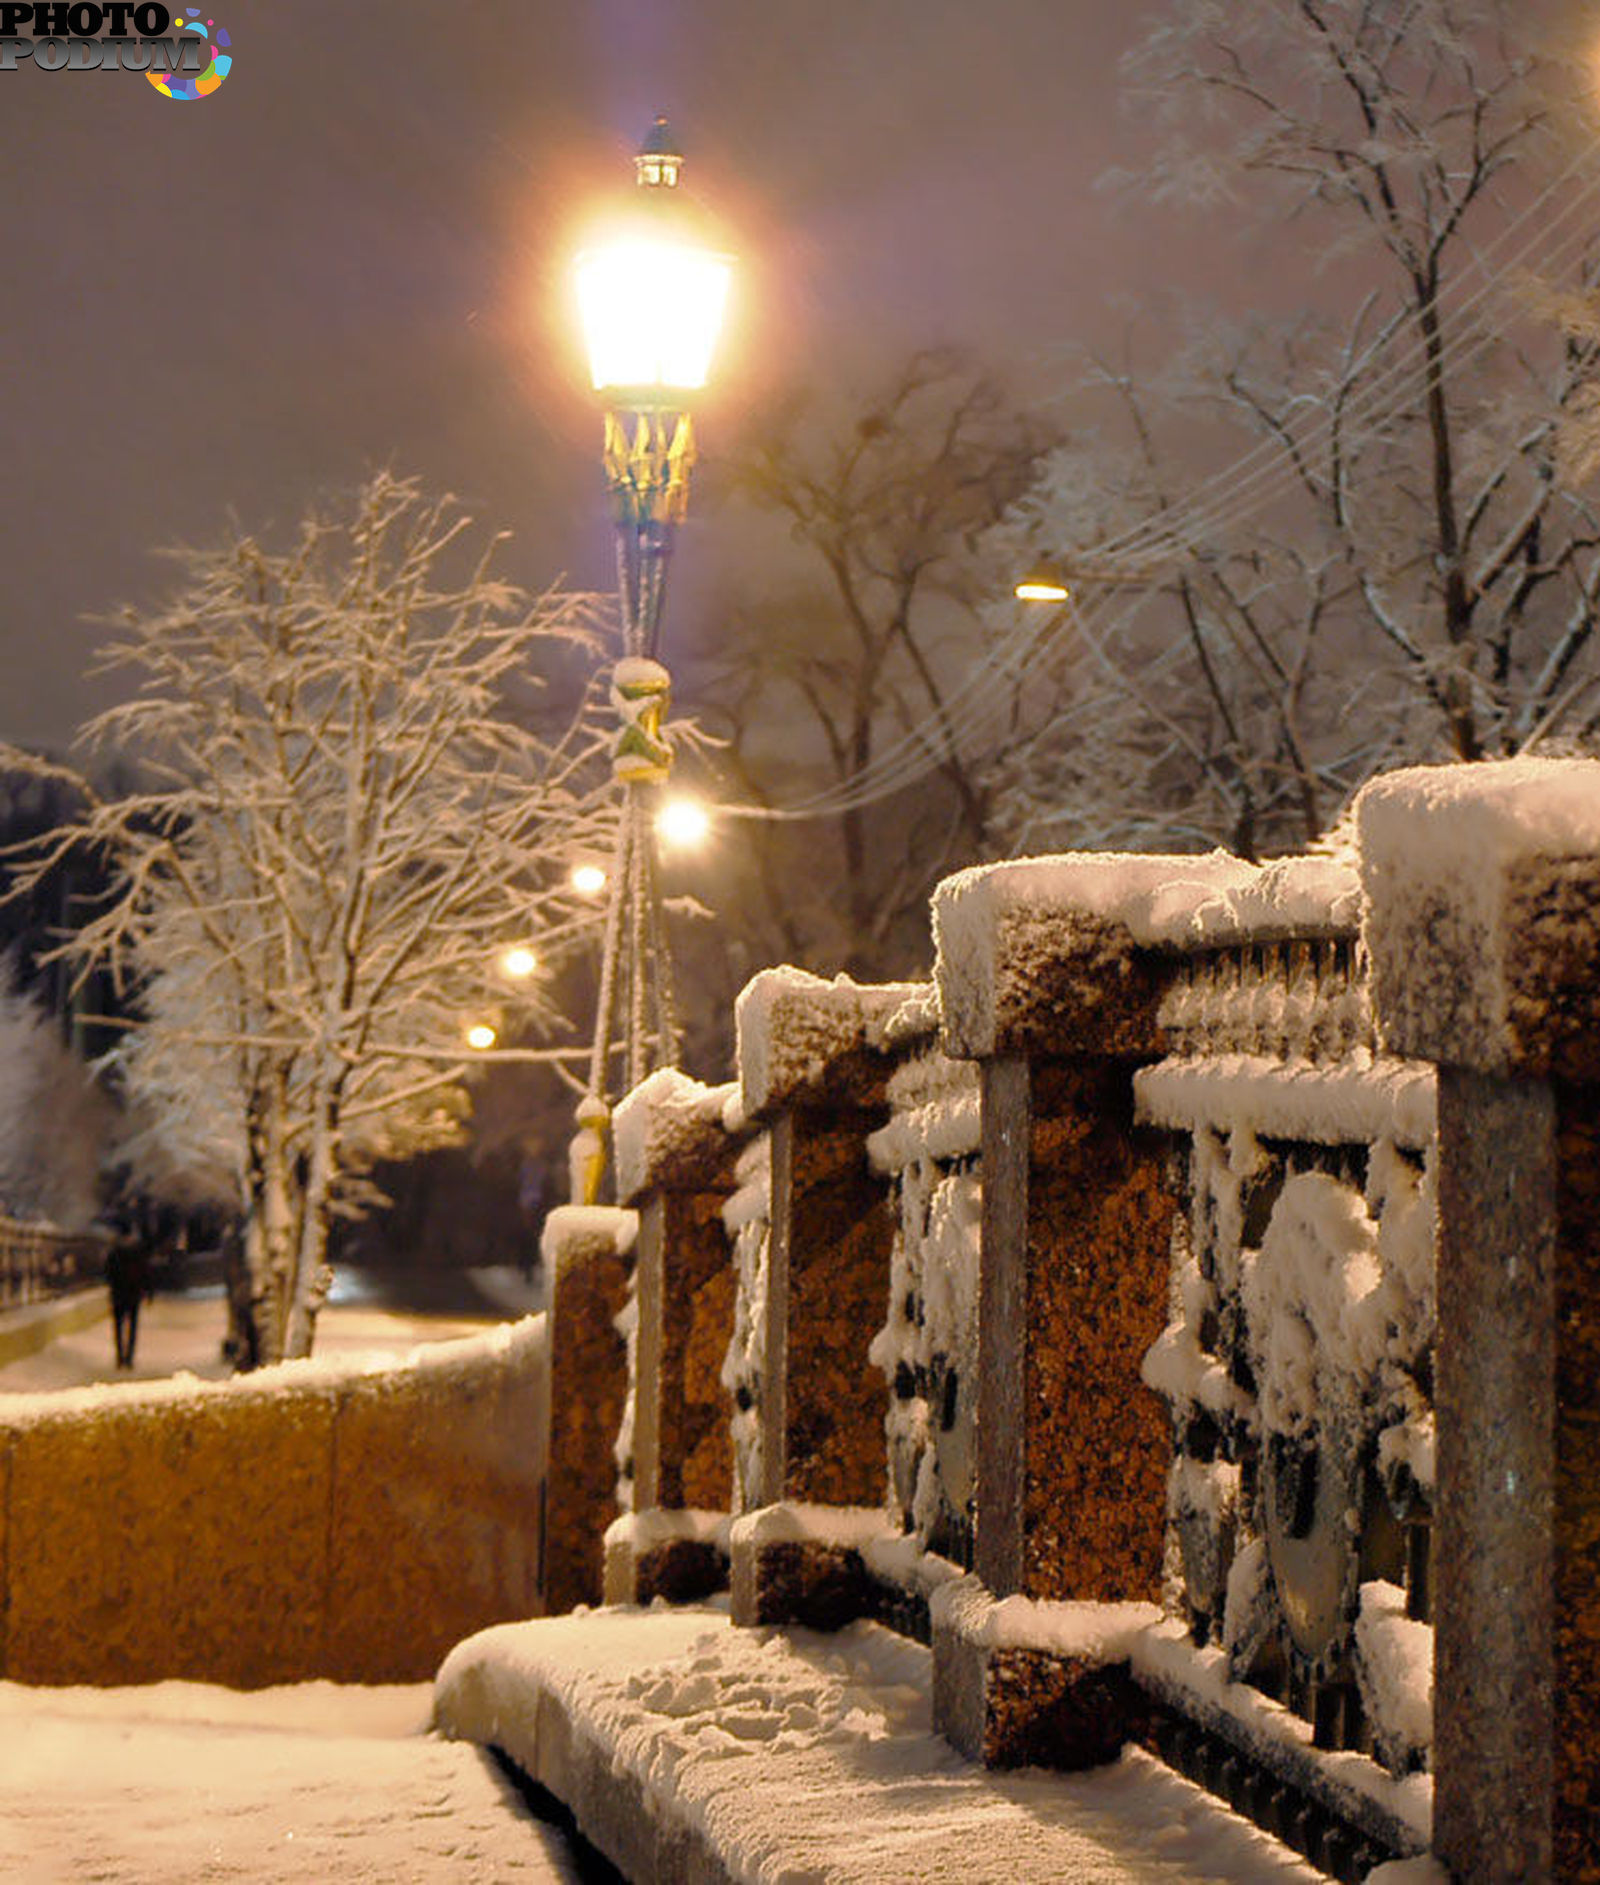 Вечером снежок. Снежная зима в городе. Красивый снегопад. Снежная улица вечером. Зимний вечер в городе.